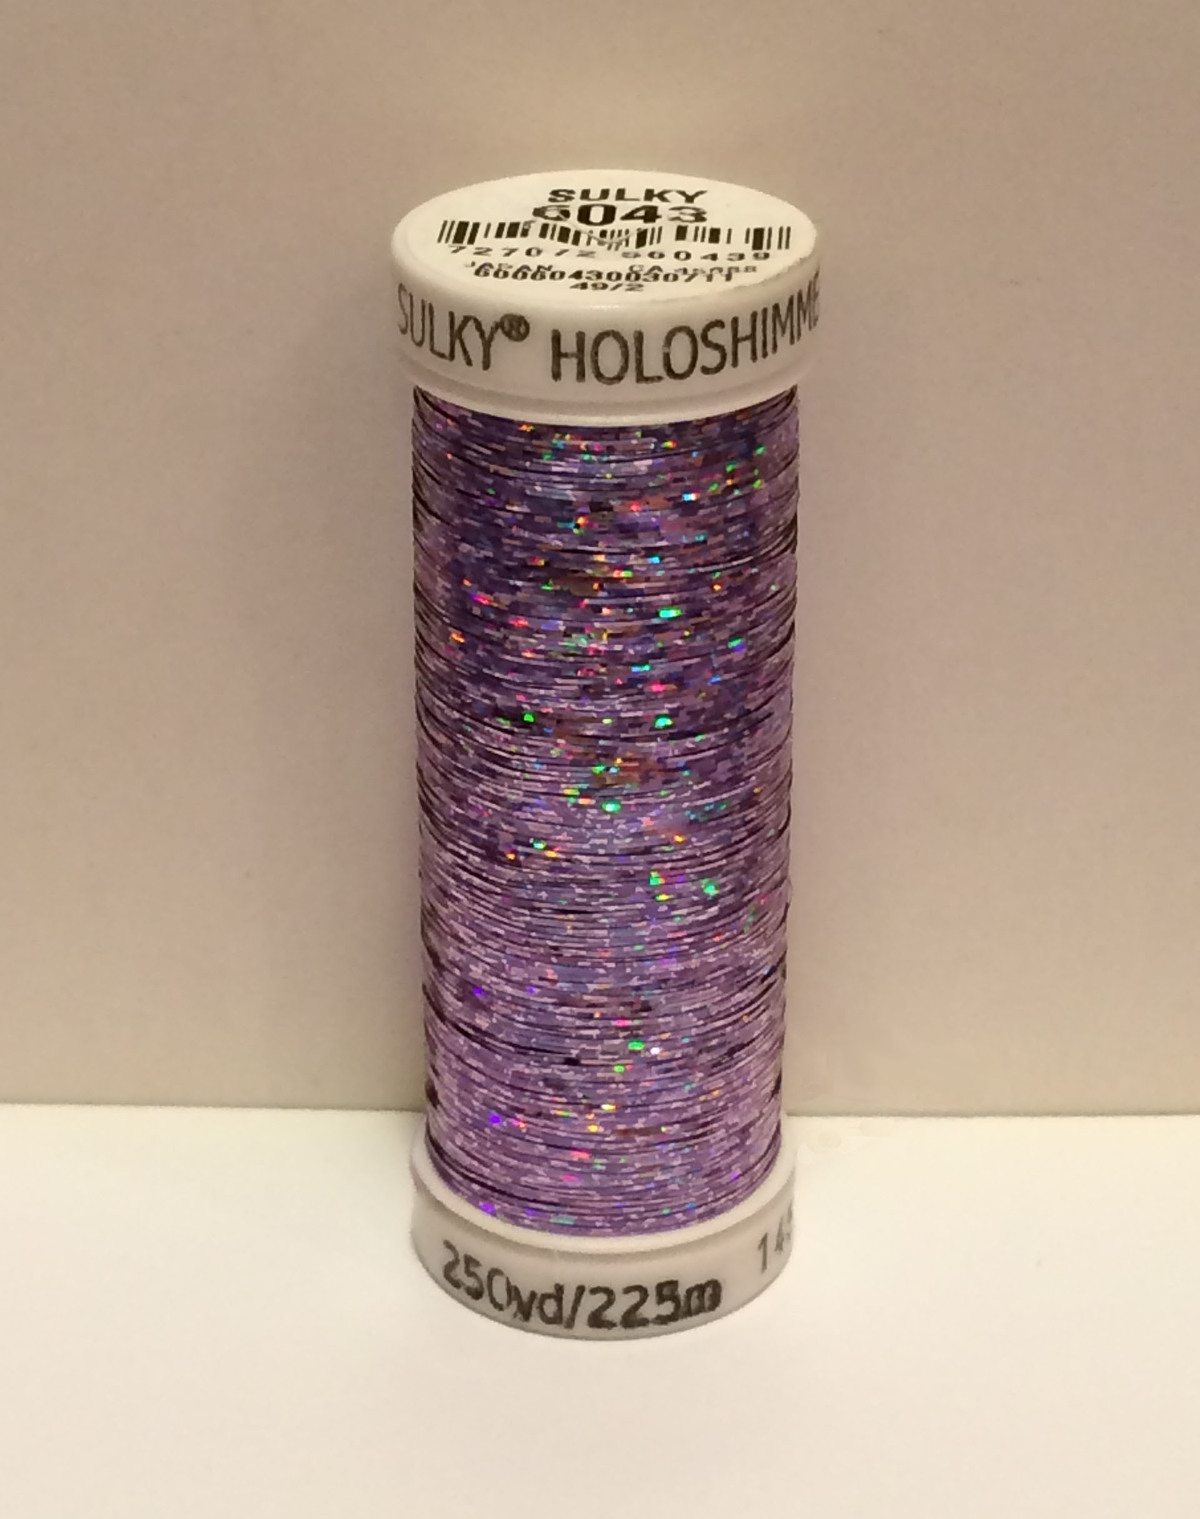 Holoshimmer metallic thread